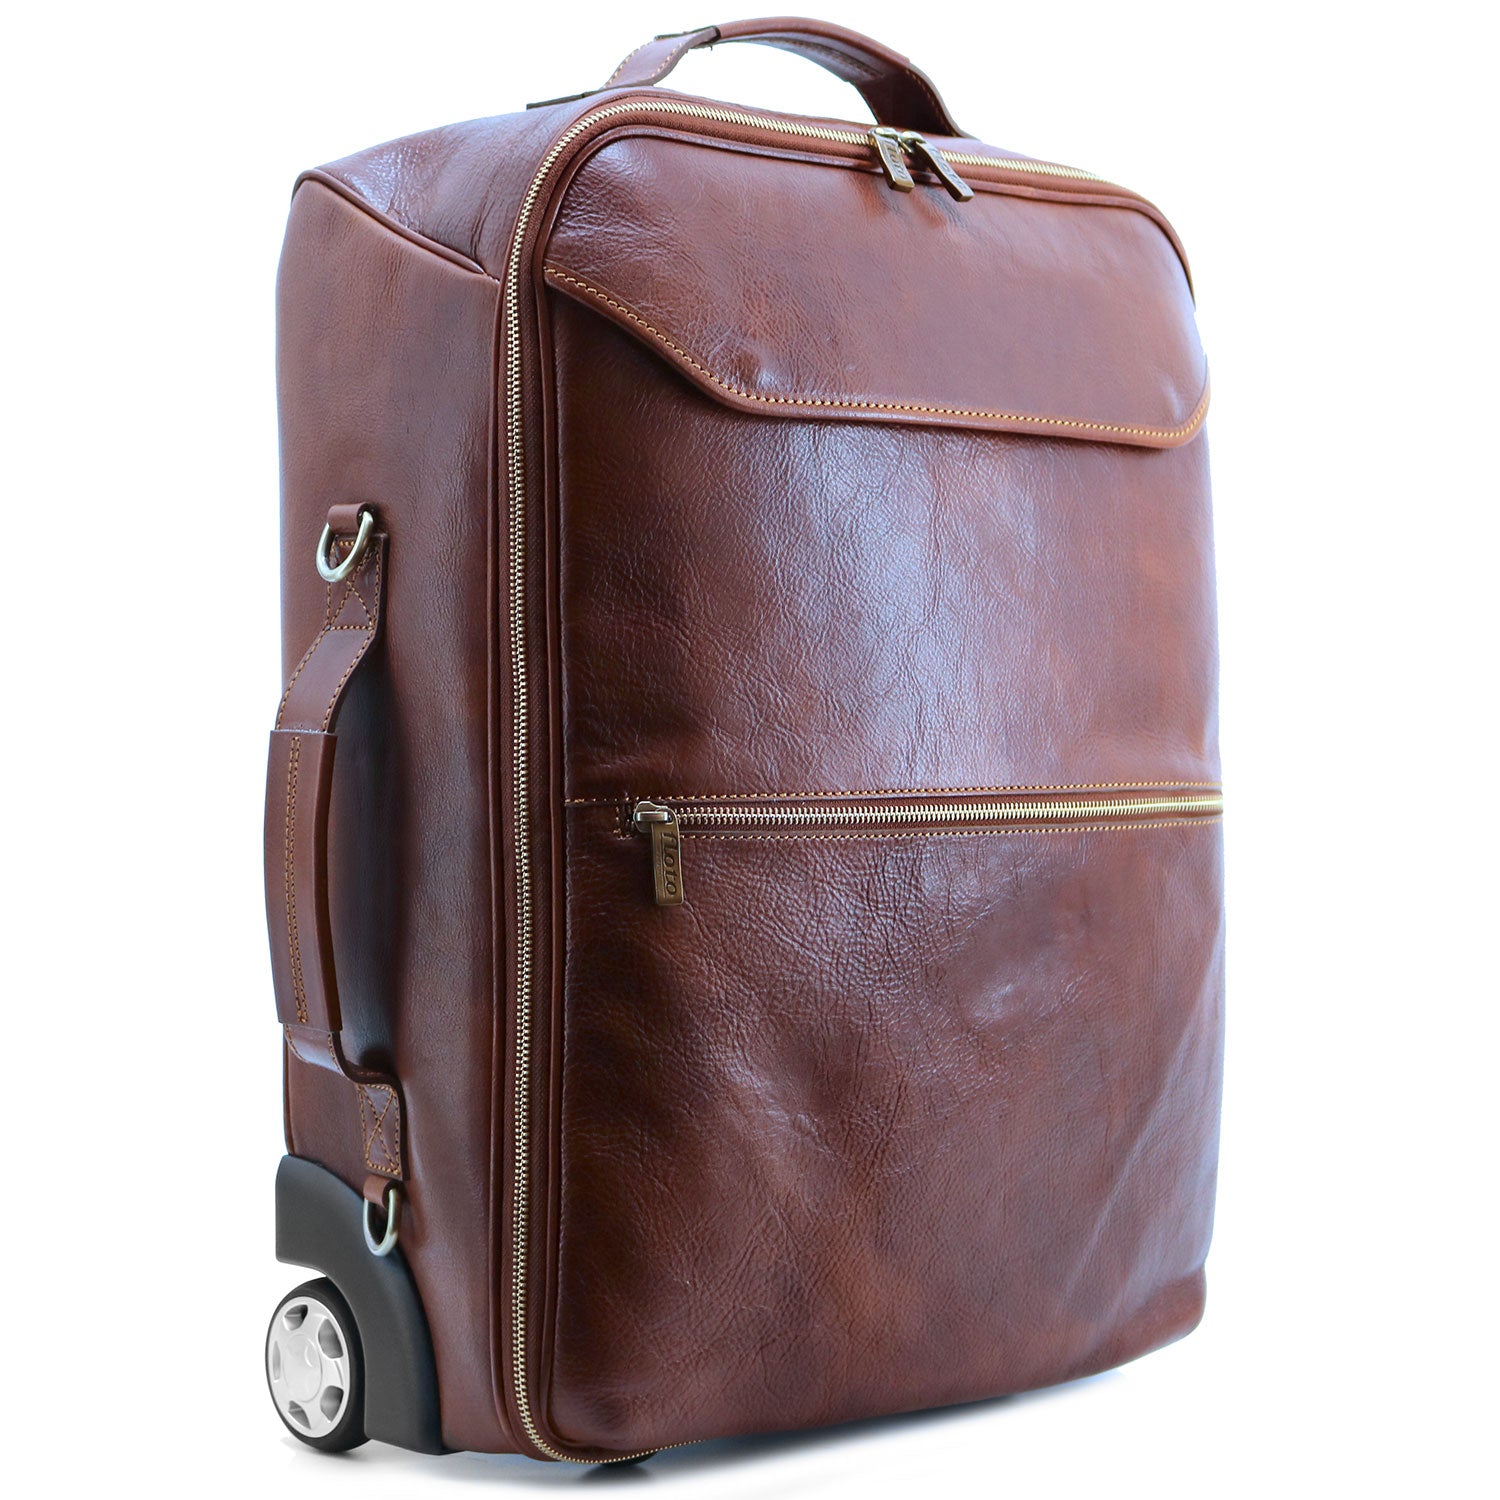 Monogram Roma Full Grain Leather Travel Bag – Floto